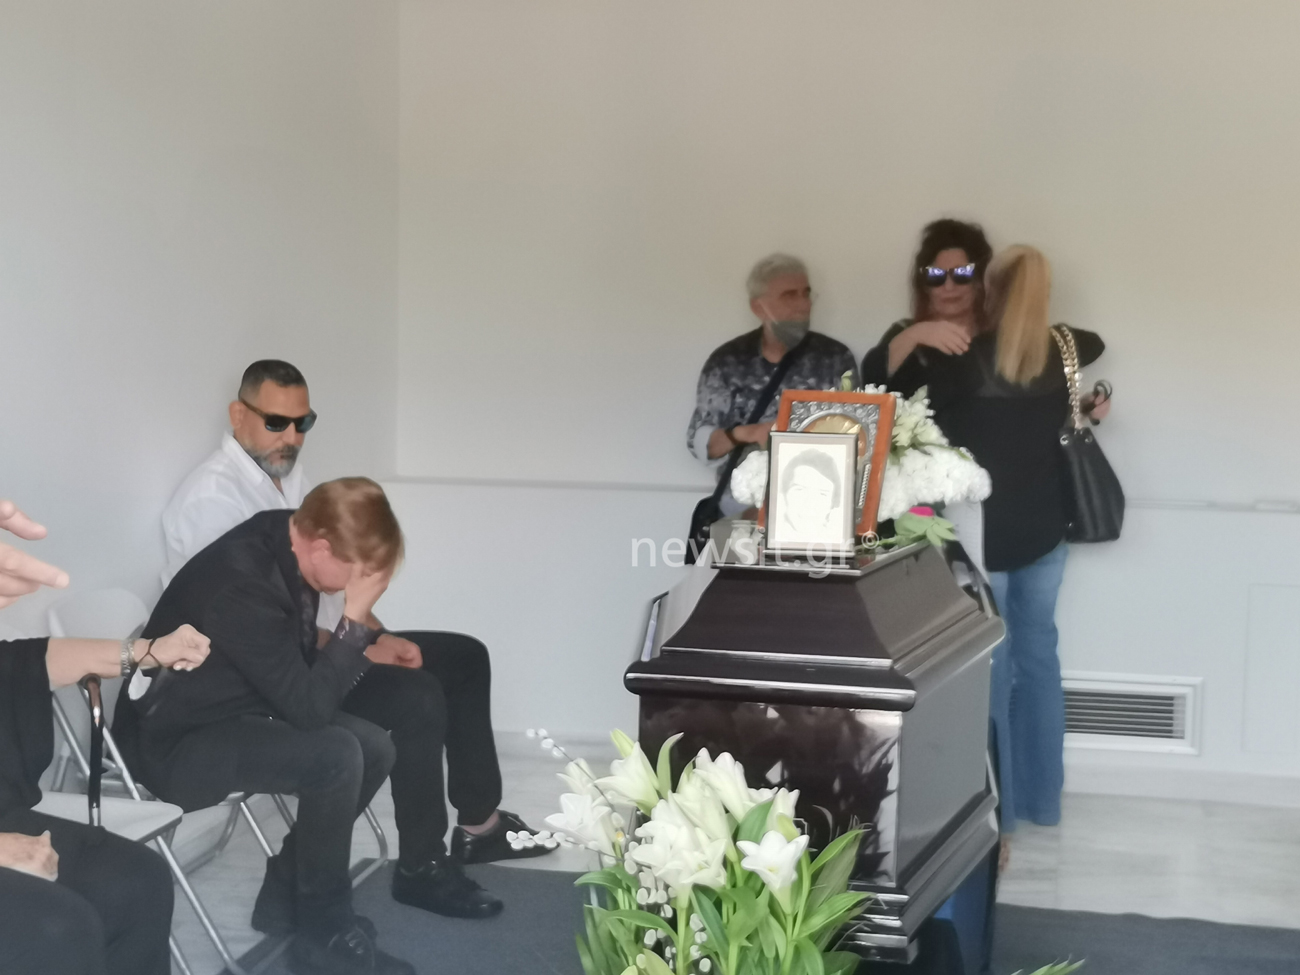 Δάκης: Πλήθος κόσμου στην κηδεία του